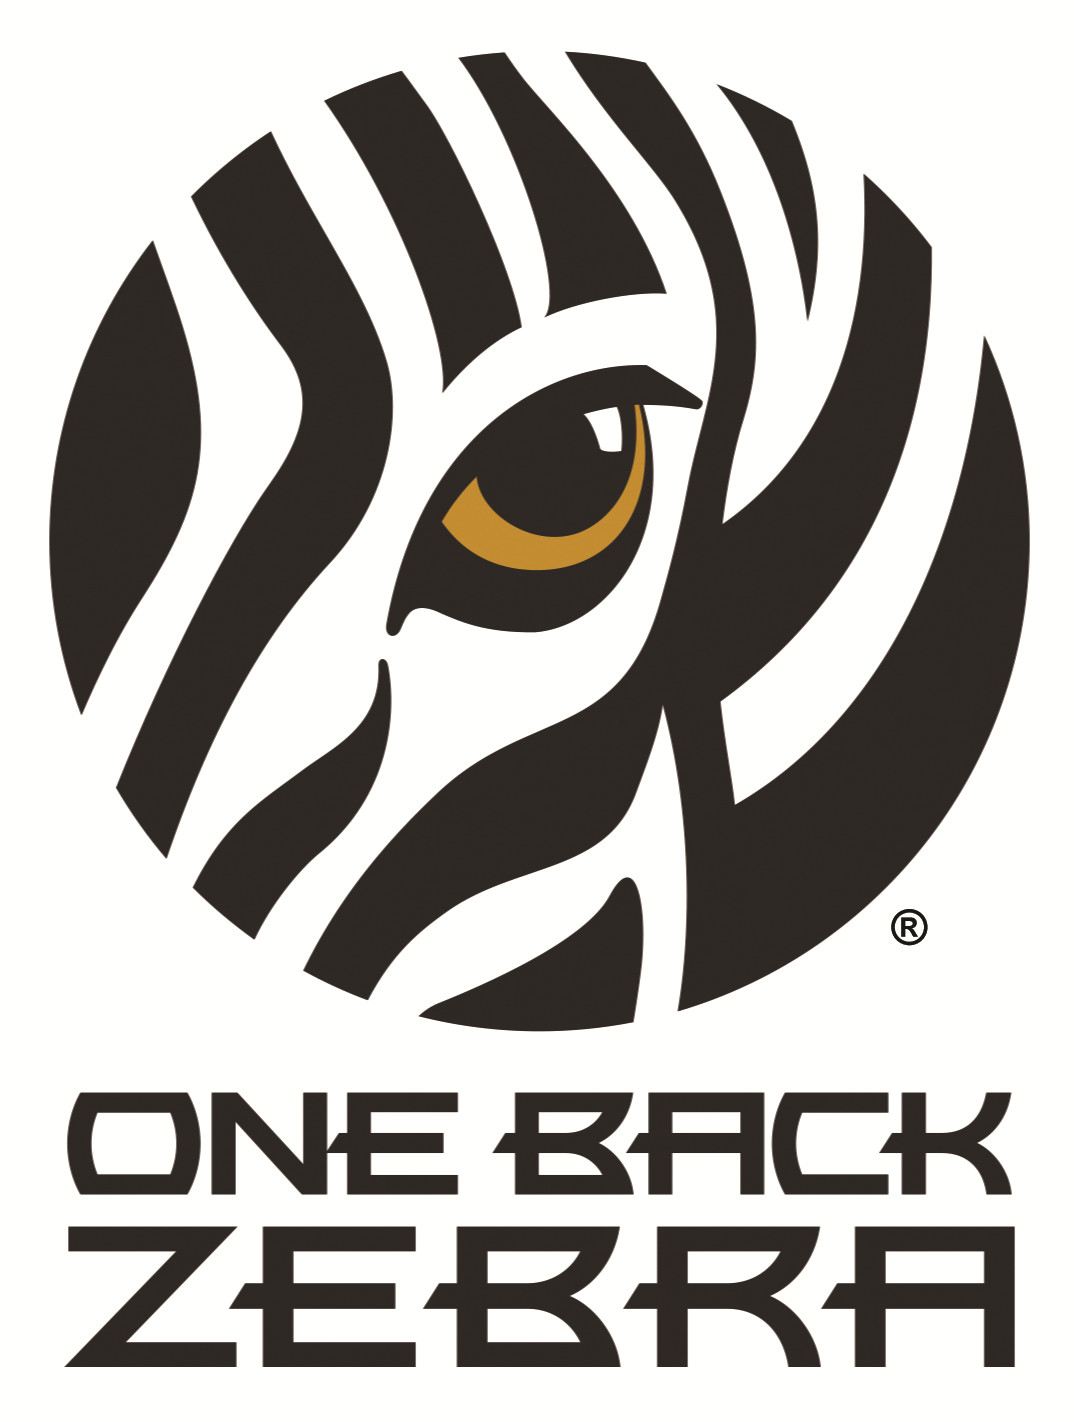 One Back Zebra